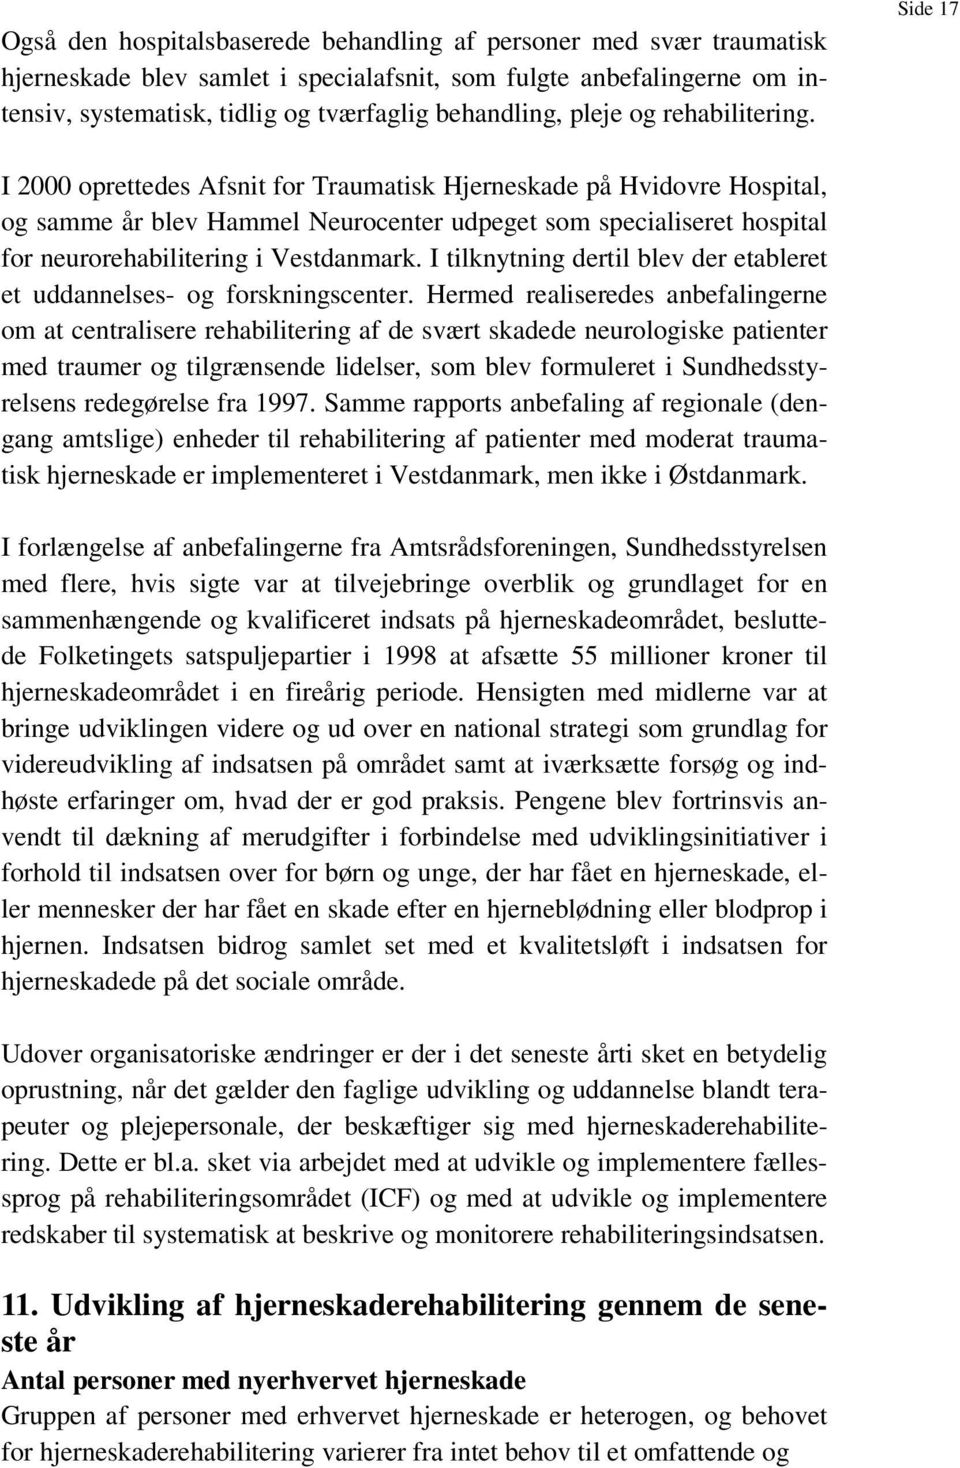 Side 17 I 2000 oprettedes Afsnit for Traumatisk Hjerneskade på Hvidovre Hospital, og samme år blev Hammel Neurocenter udpeget som specialiseret hospital for neurorehabilitering i Vestdanmark.